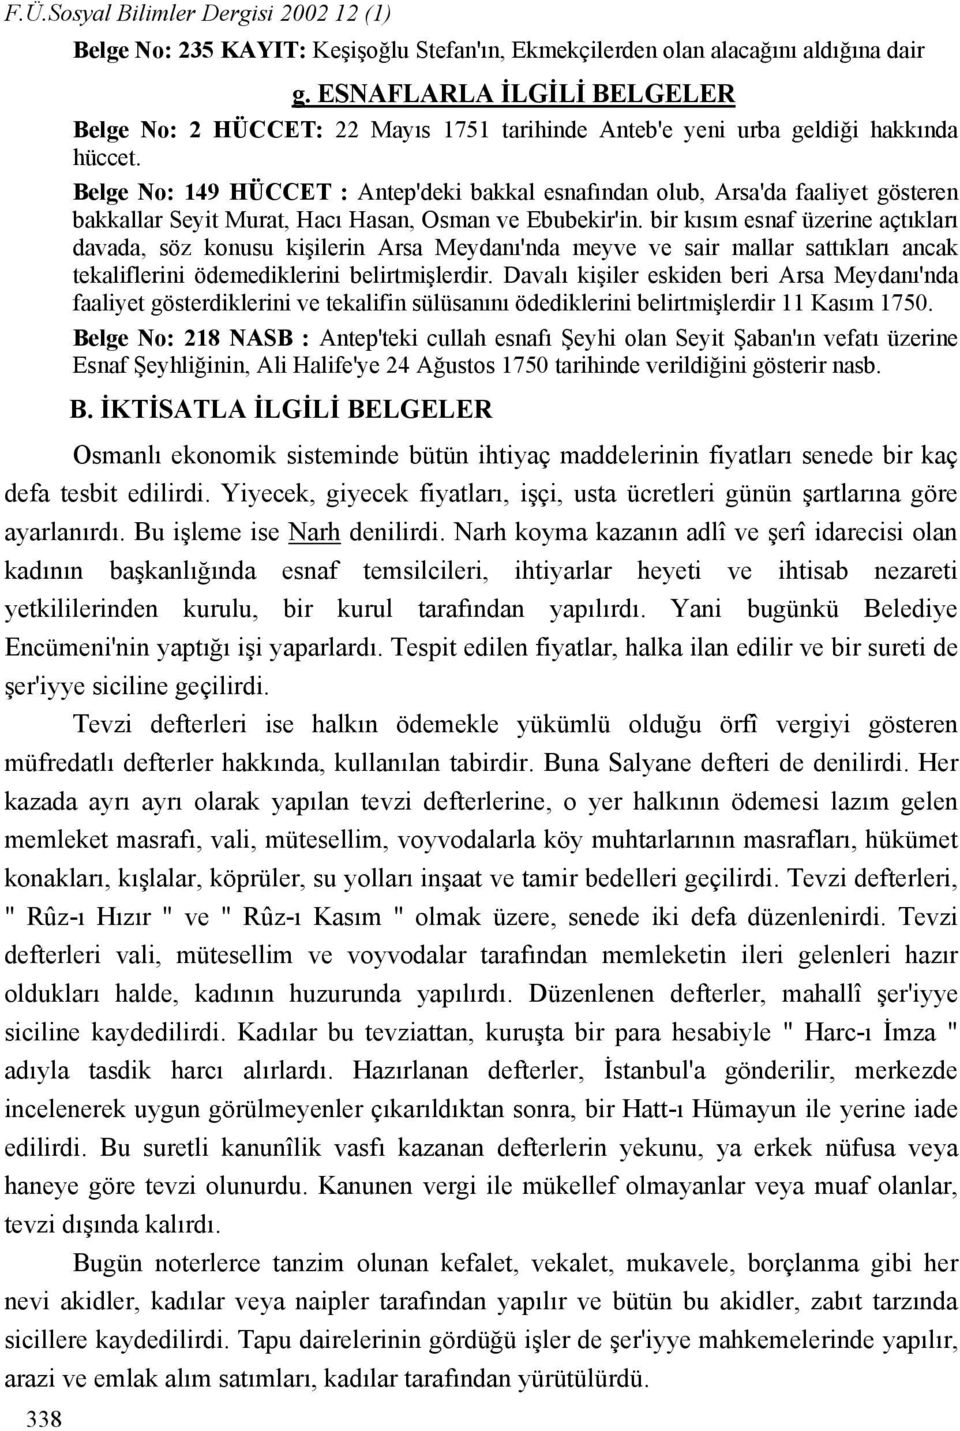 Belge No: 149 HÜCCET : Antep'deki bakkal esnafından olub, Arsa'da faaliyet gösteren bakkallar Seyit Murat, Hacı Hasan, Osman ve Ebubekir'in.